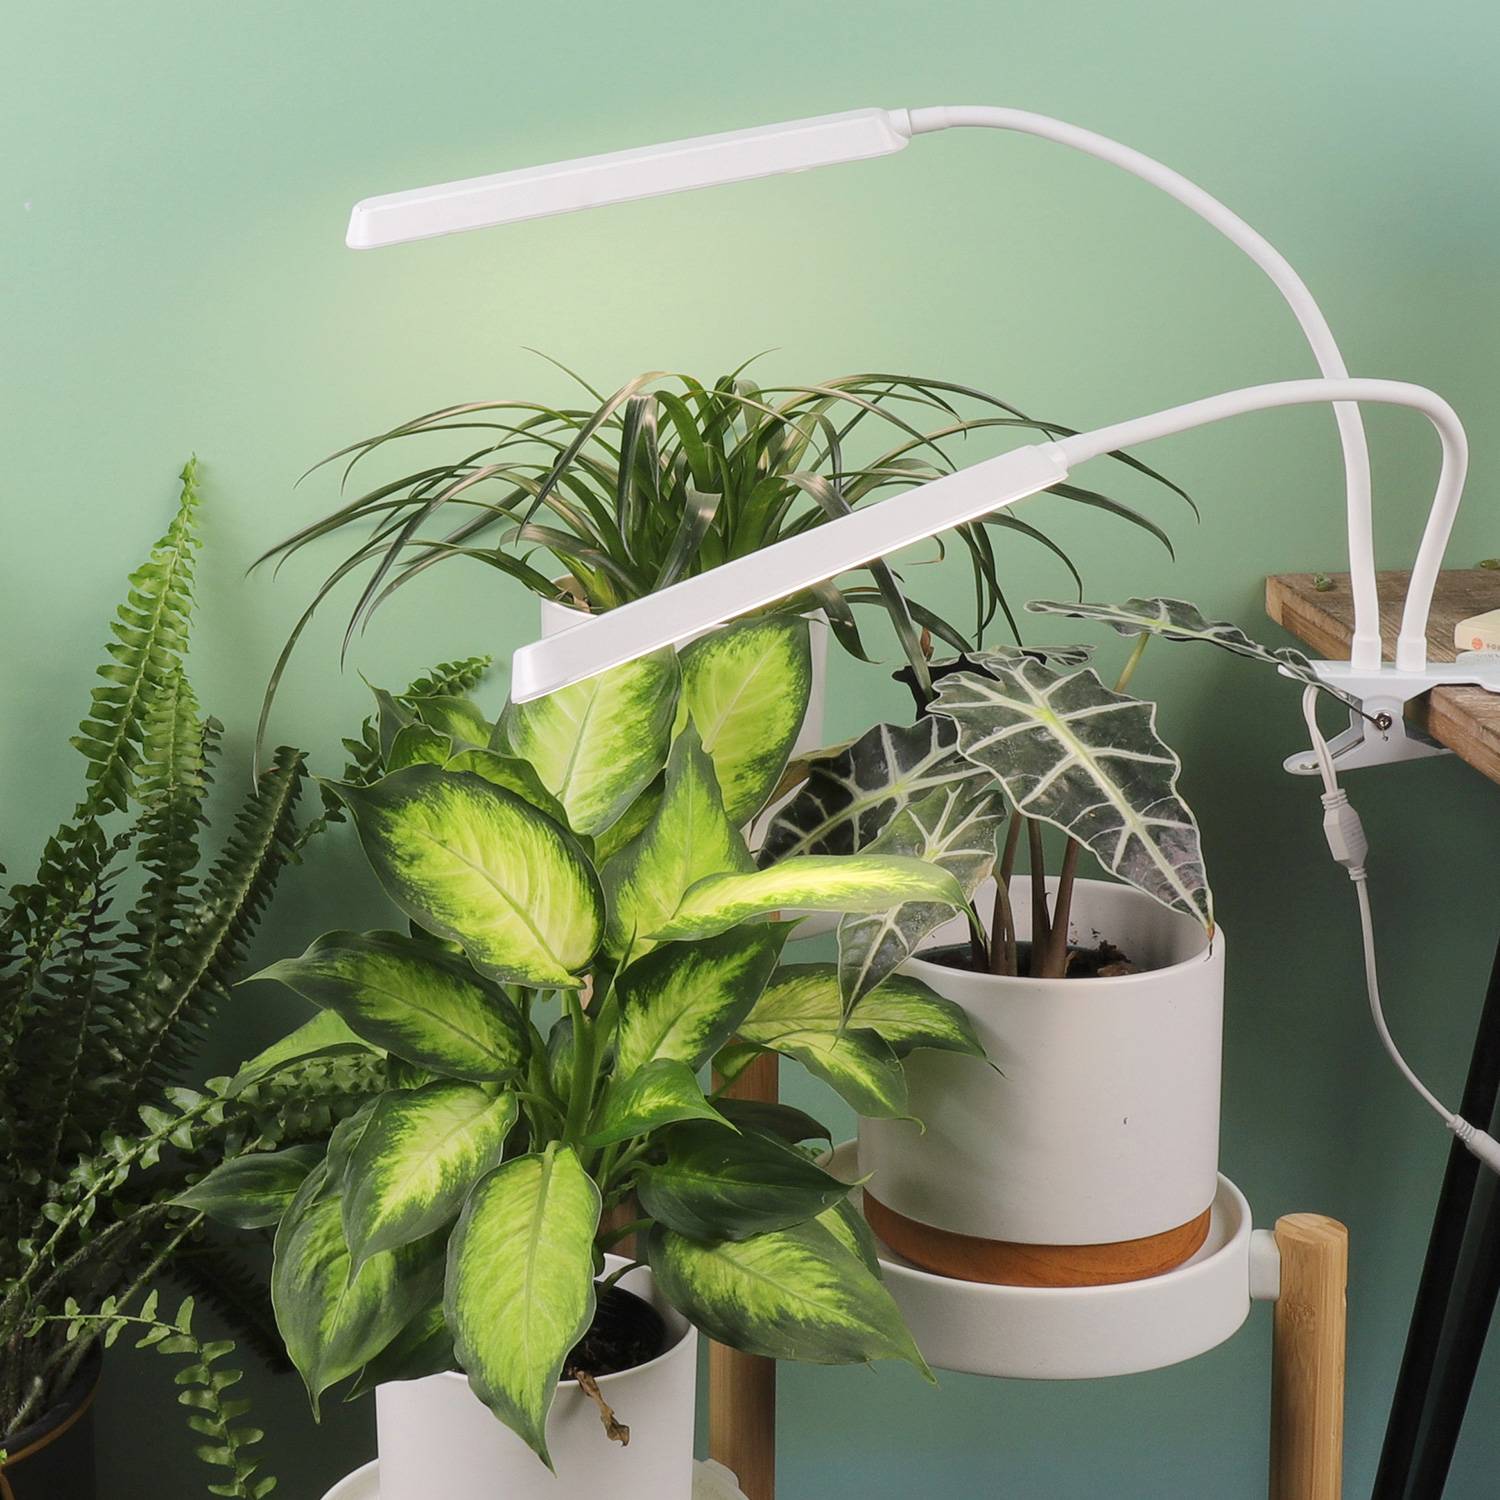 TG201 Led Indoor Garden Plant Lights for Winter Best Grow Light Light Growing Kit .